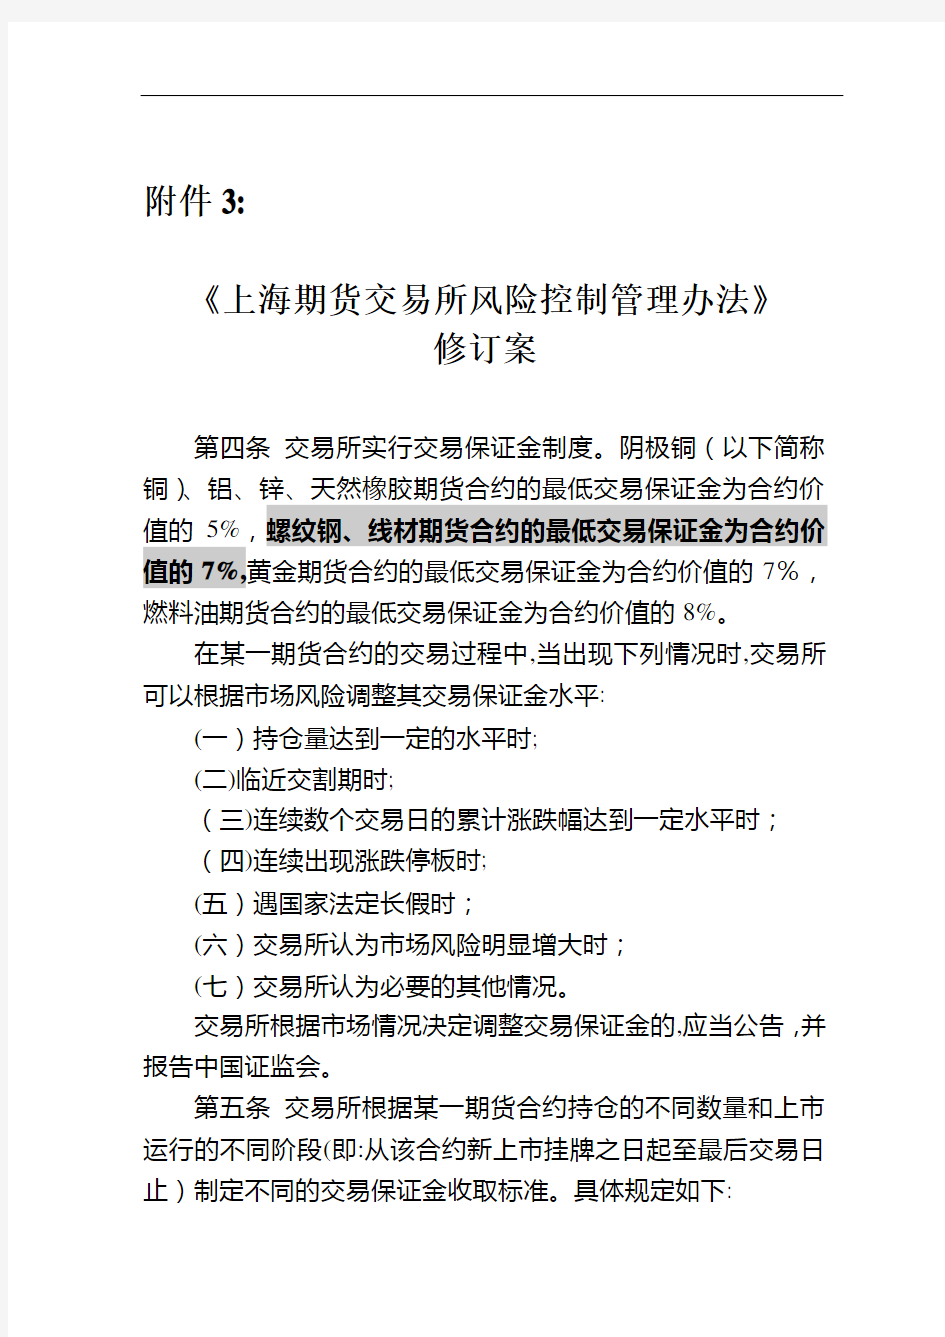 《上海期货交易所风险控制管理办法》修订案